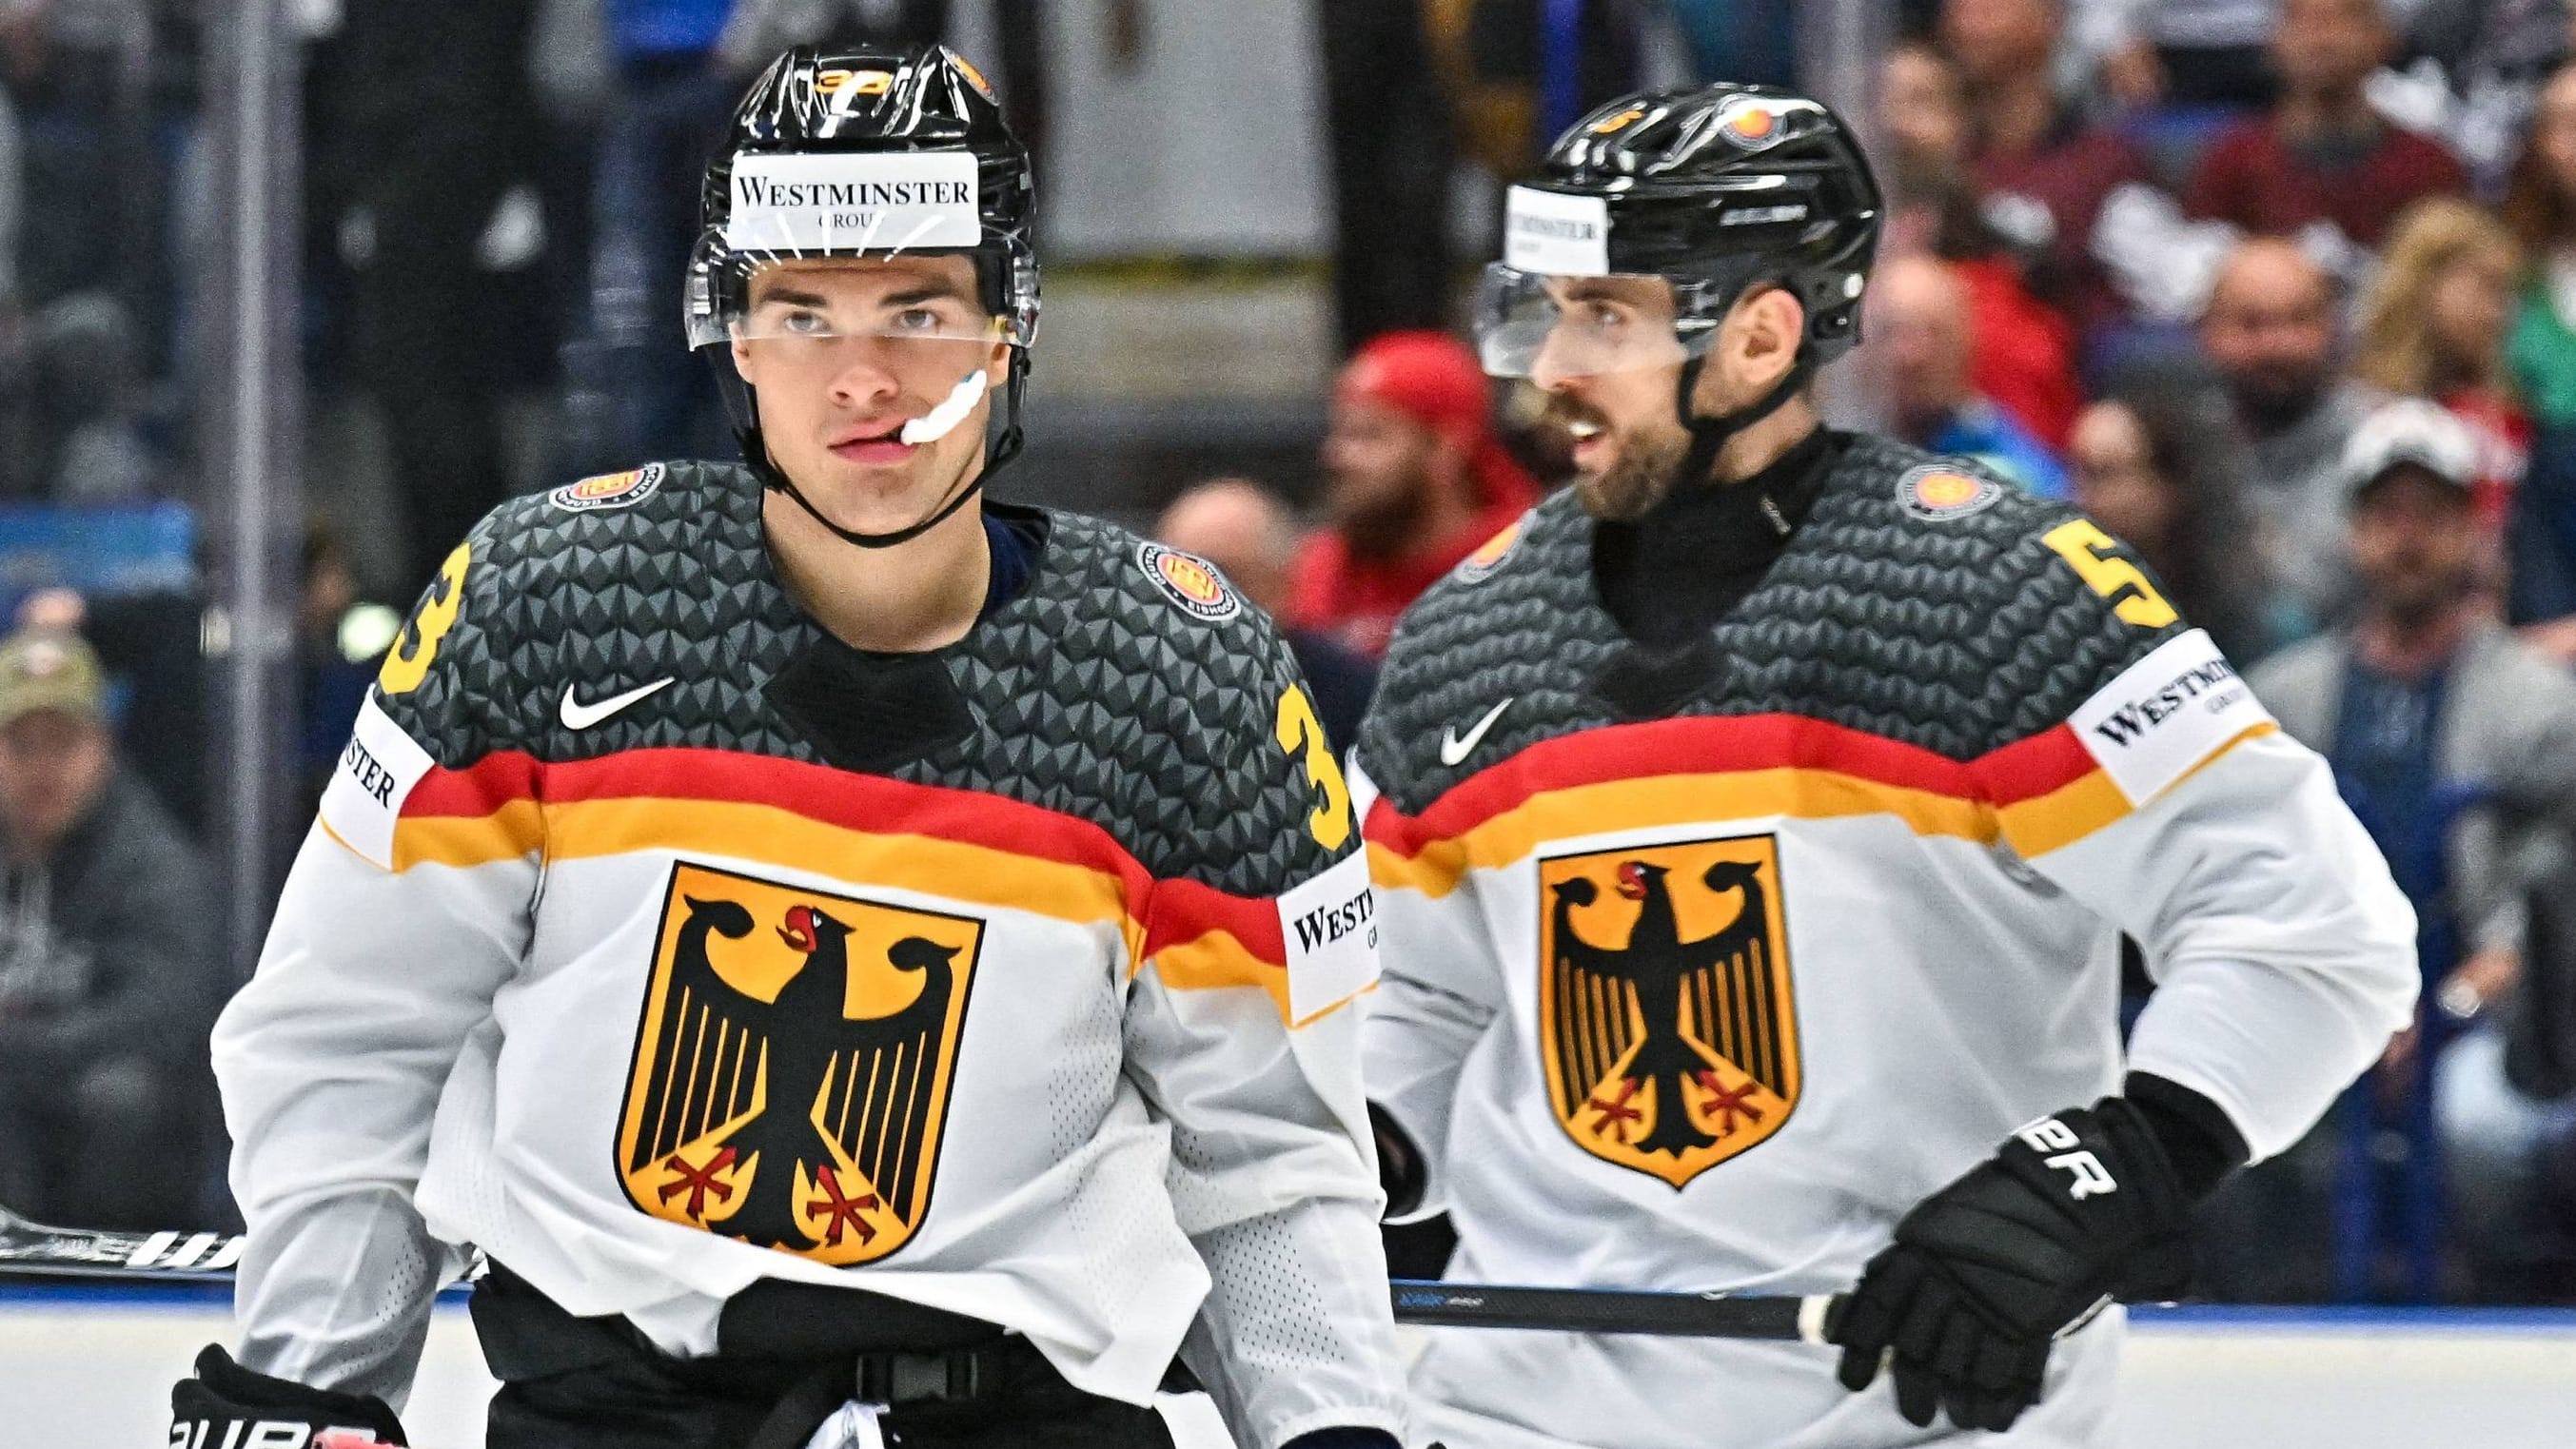 Eishockey-WM: Deutschland kassiert bittere Klatsche gegen die USA